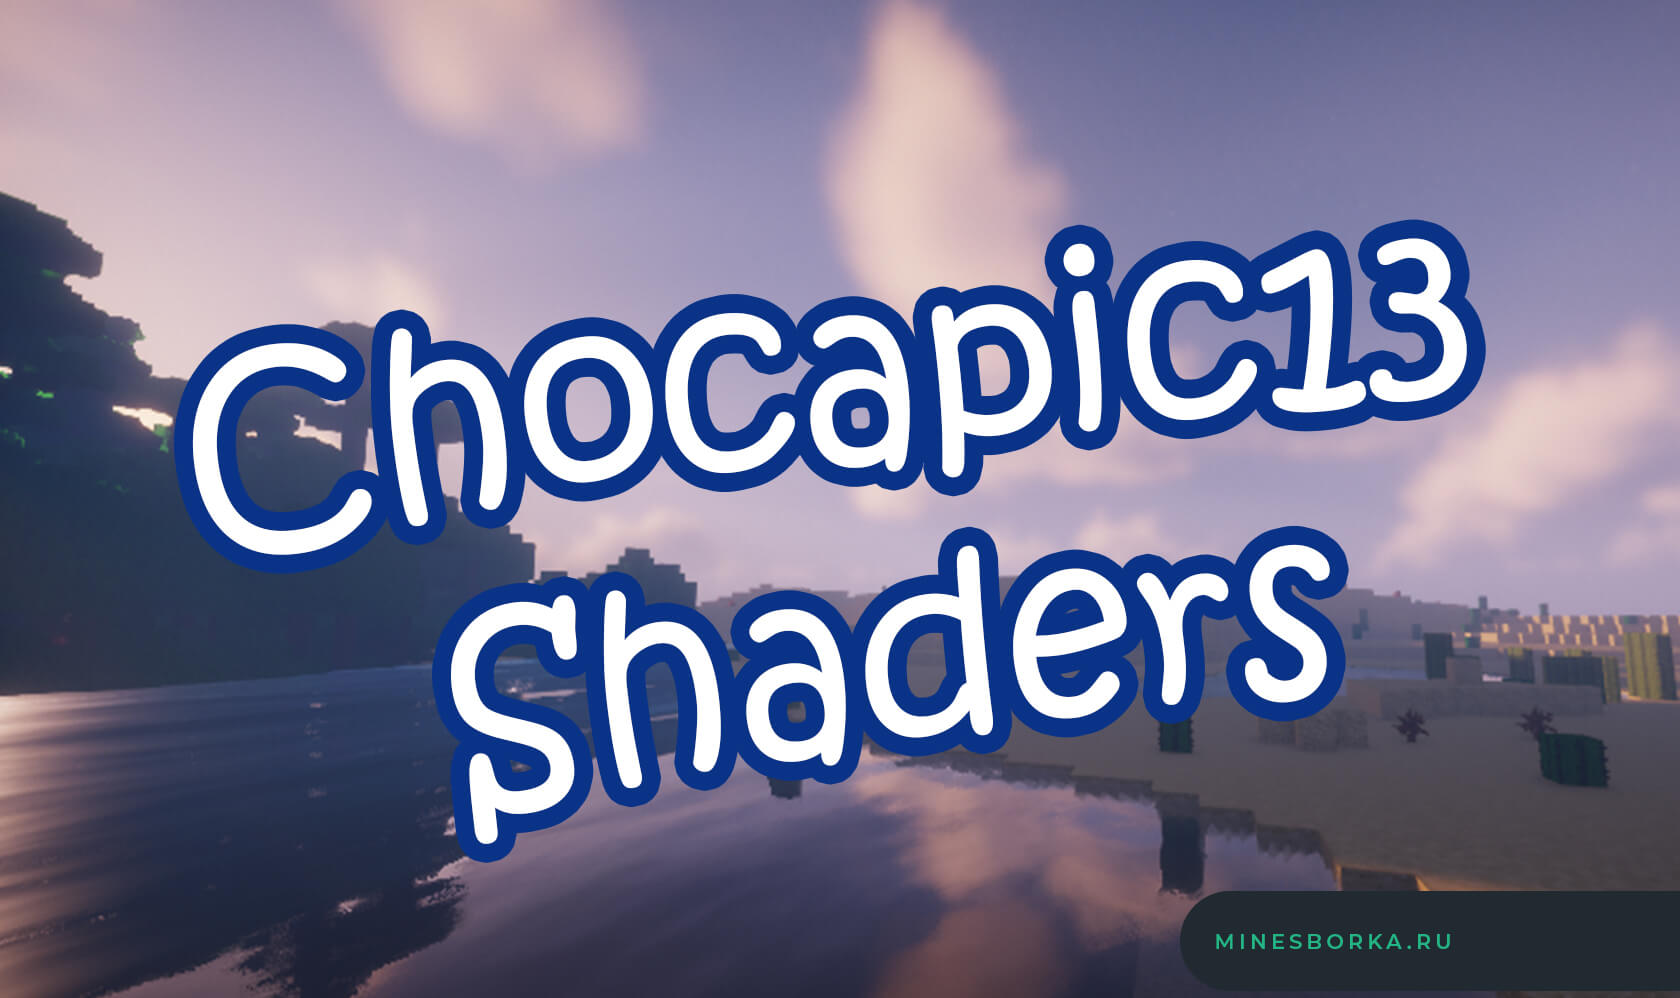 Скачать шейдеры Chocapic13 Shaders | Прекрасные шейдеры для майнкрафт